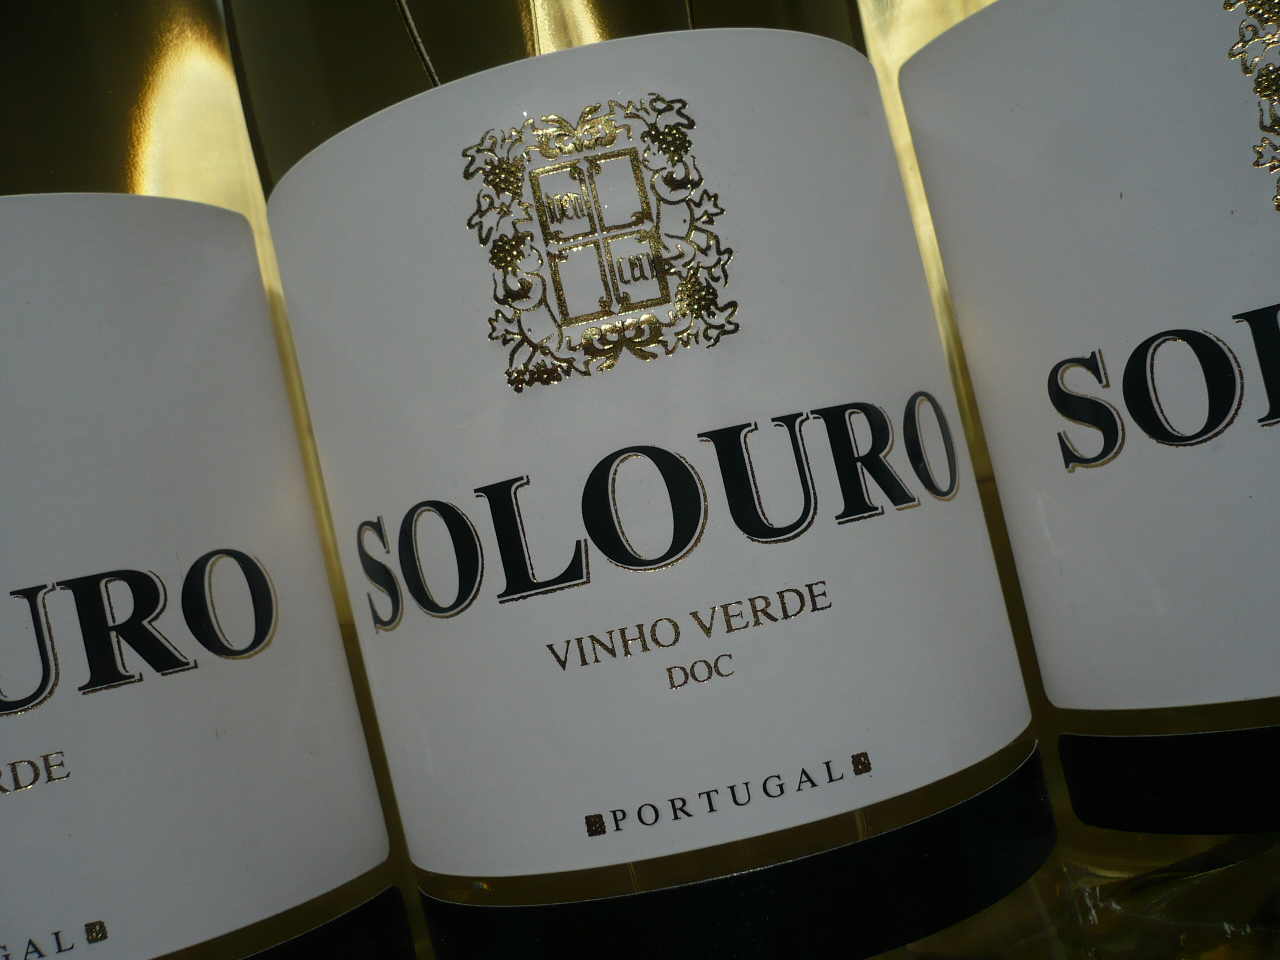 VERDE Branco VINHO – Caves DOC, Weinhandel im Solouro Campelo -0,75l- Fedelhören 2022er